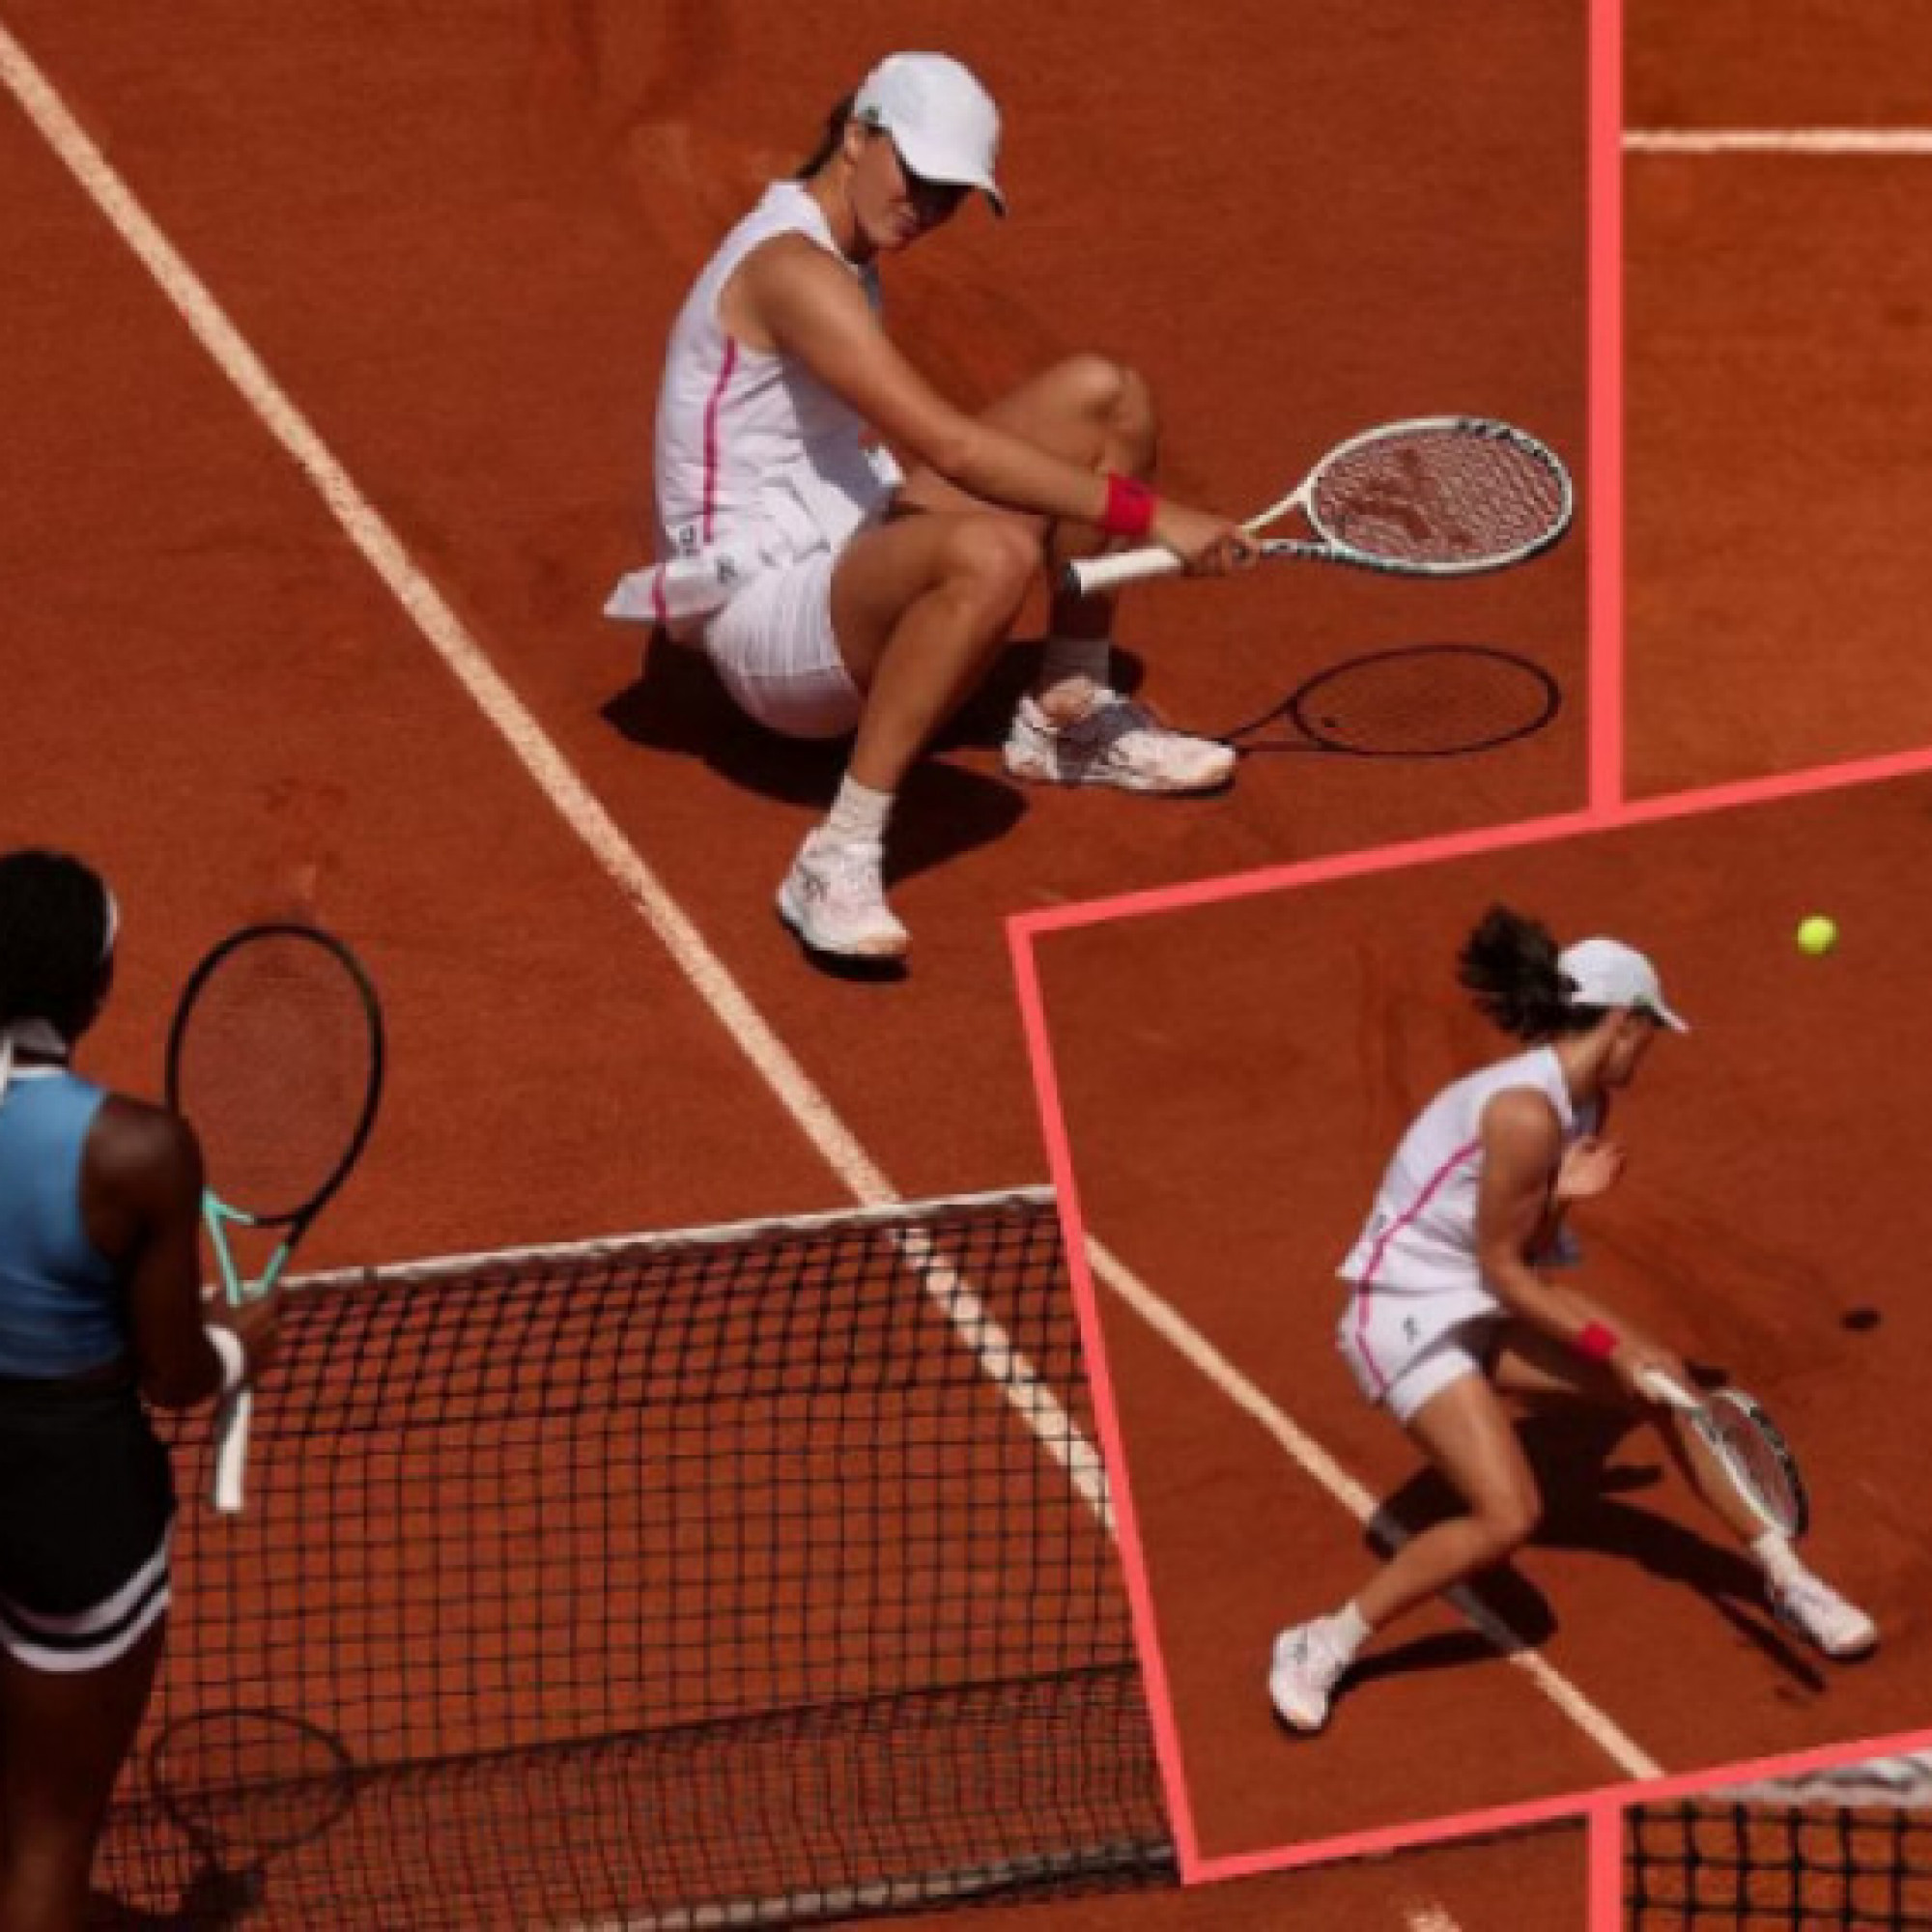  - Số 1 tennis nữ thế giới lên tiếng khi bị đánh thẳng vào người ở Roland Garros